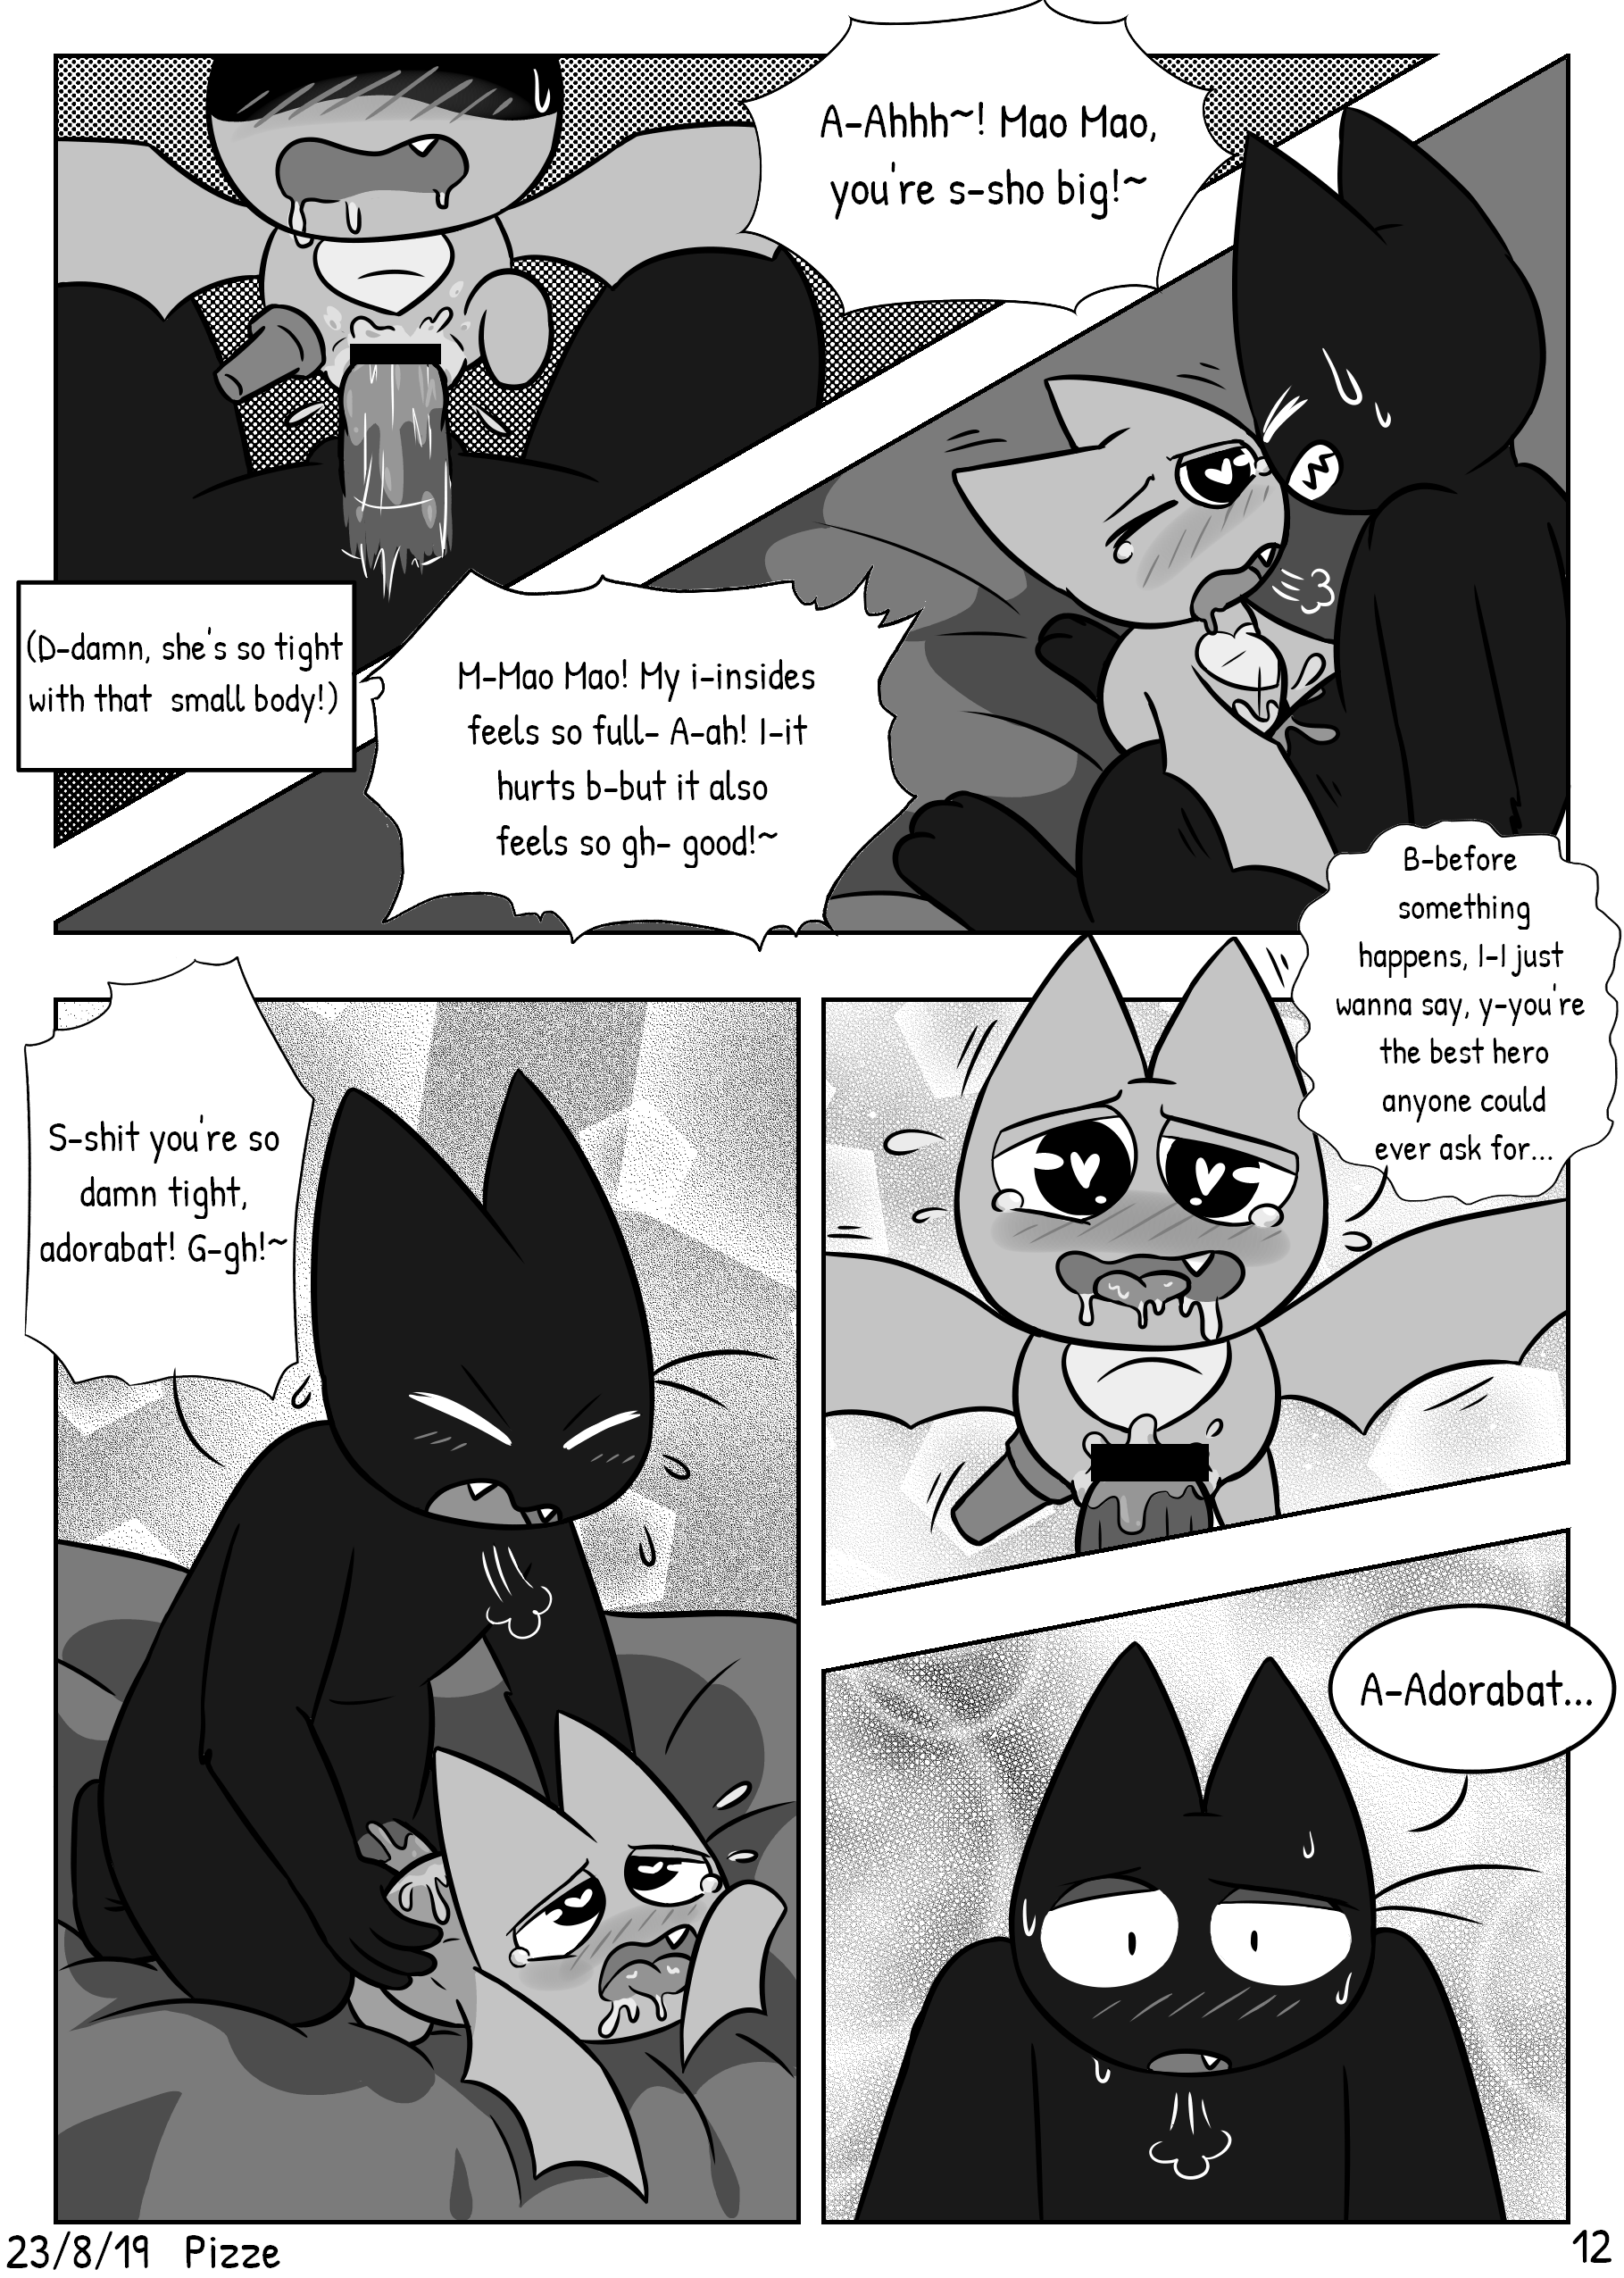 Little Bat Training porn comic picture 12